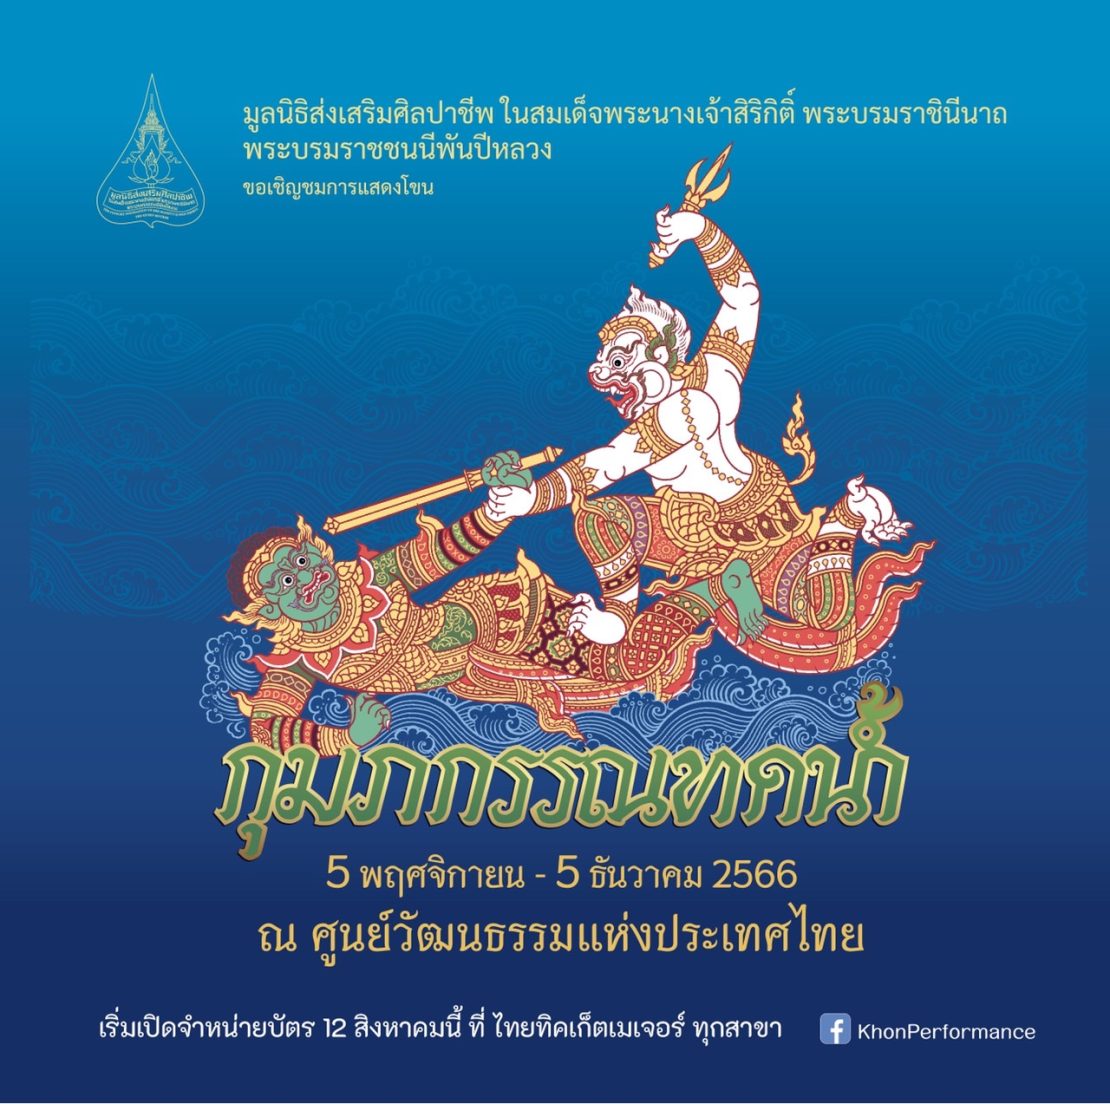 มูลนิธิส่งเสริมศิลปาชีพ เปิดการแสดงโขน เรื่องรามเกียรติ์ ตอน “กุมภกรรณทดน้ำ” ณ หอประชุมใหญ่ ศูนย์วัฒนธรรมแห่งประเทศไทย ระหว่างวันที่ 5 พฤศจิกายน ถึงวันที่ 5 ธันวาคม 2566 เปิดจำหน่ายบัตรตั้งแต่วันที่ 12 สิงหาคม เป็นต้นไป ที่ไทยทิคเก็ตเมเจอร์ทุกสาขา